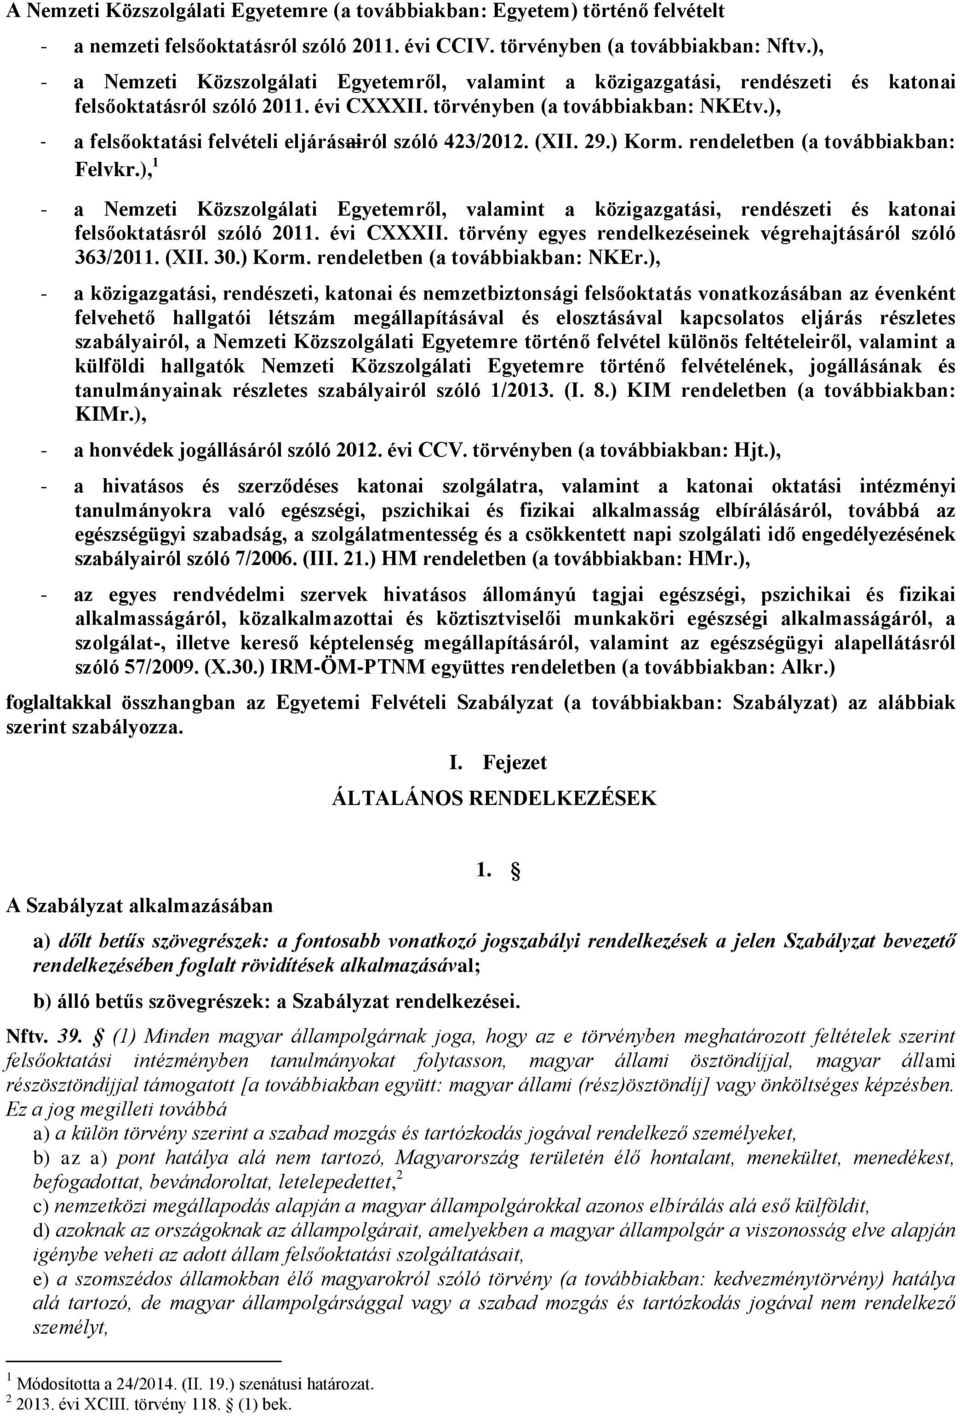 ), - a felsőoktatási felvételi eljárásairól szóló 423/2012. (XII. 29.) Korm. rendeletben (a továbbiakban: Felvkr.